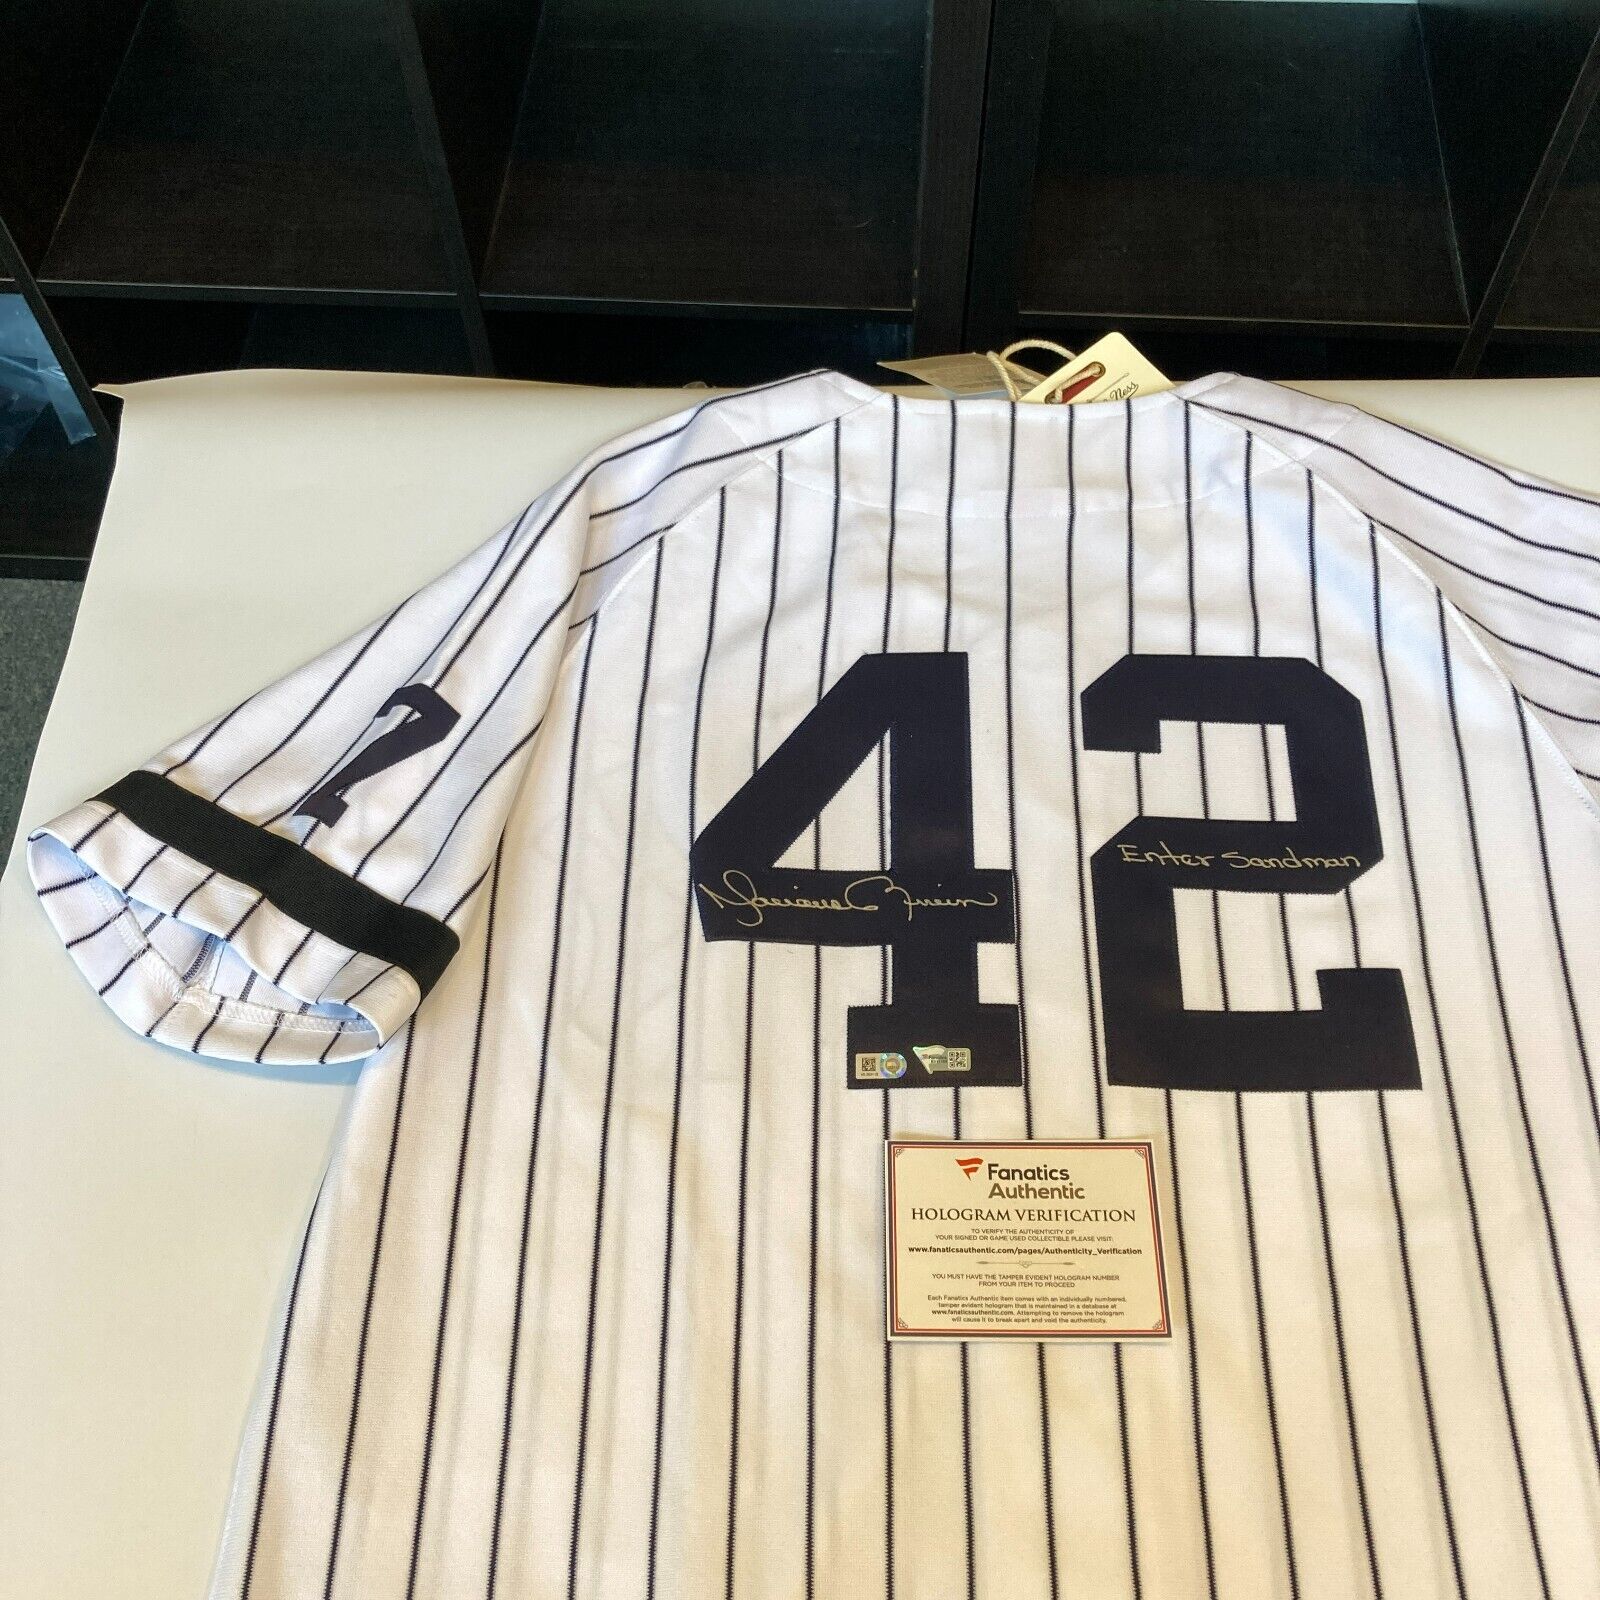 Shop Mitchell & Ness New York Yankees Mariano Rivera 1995